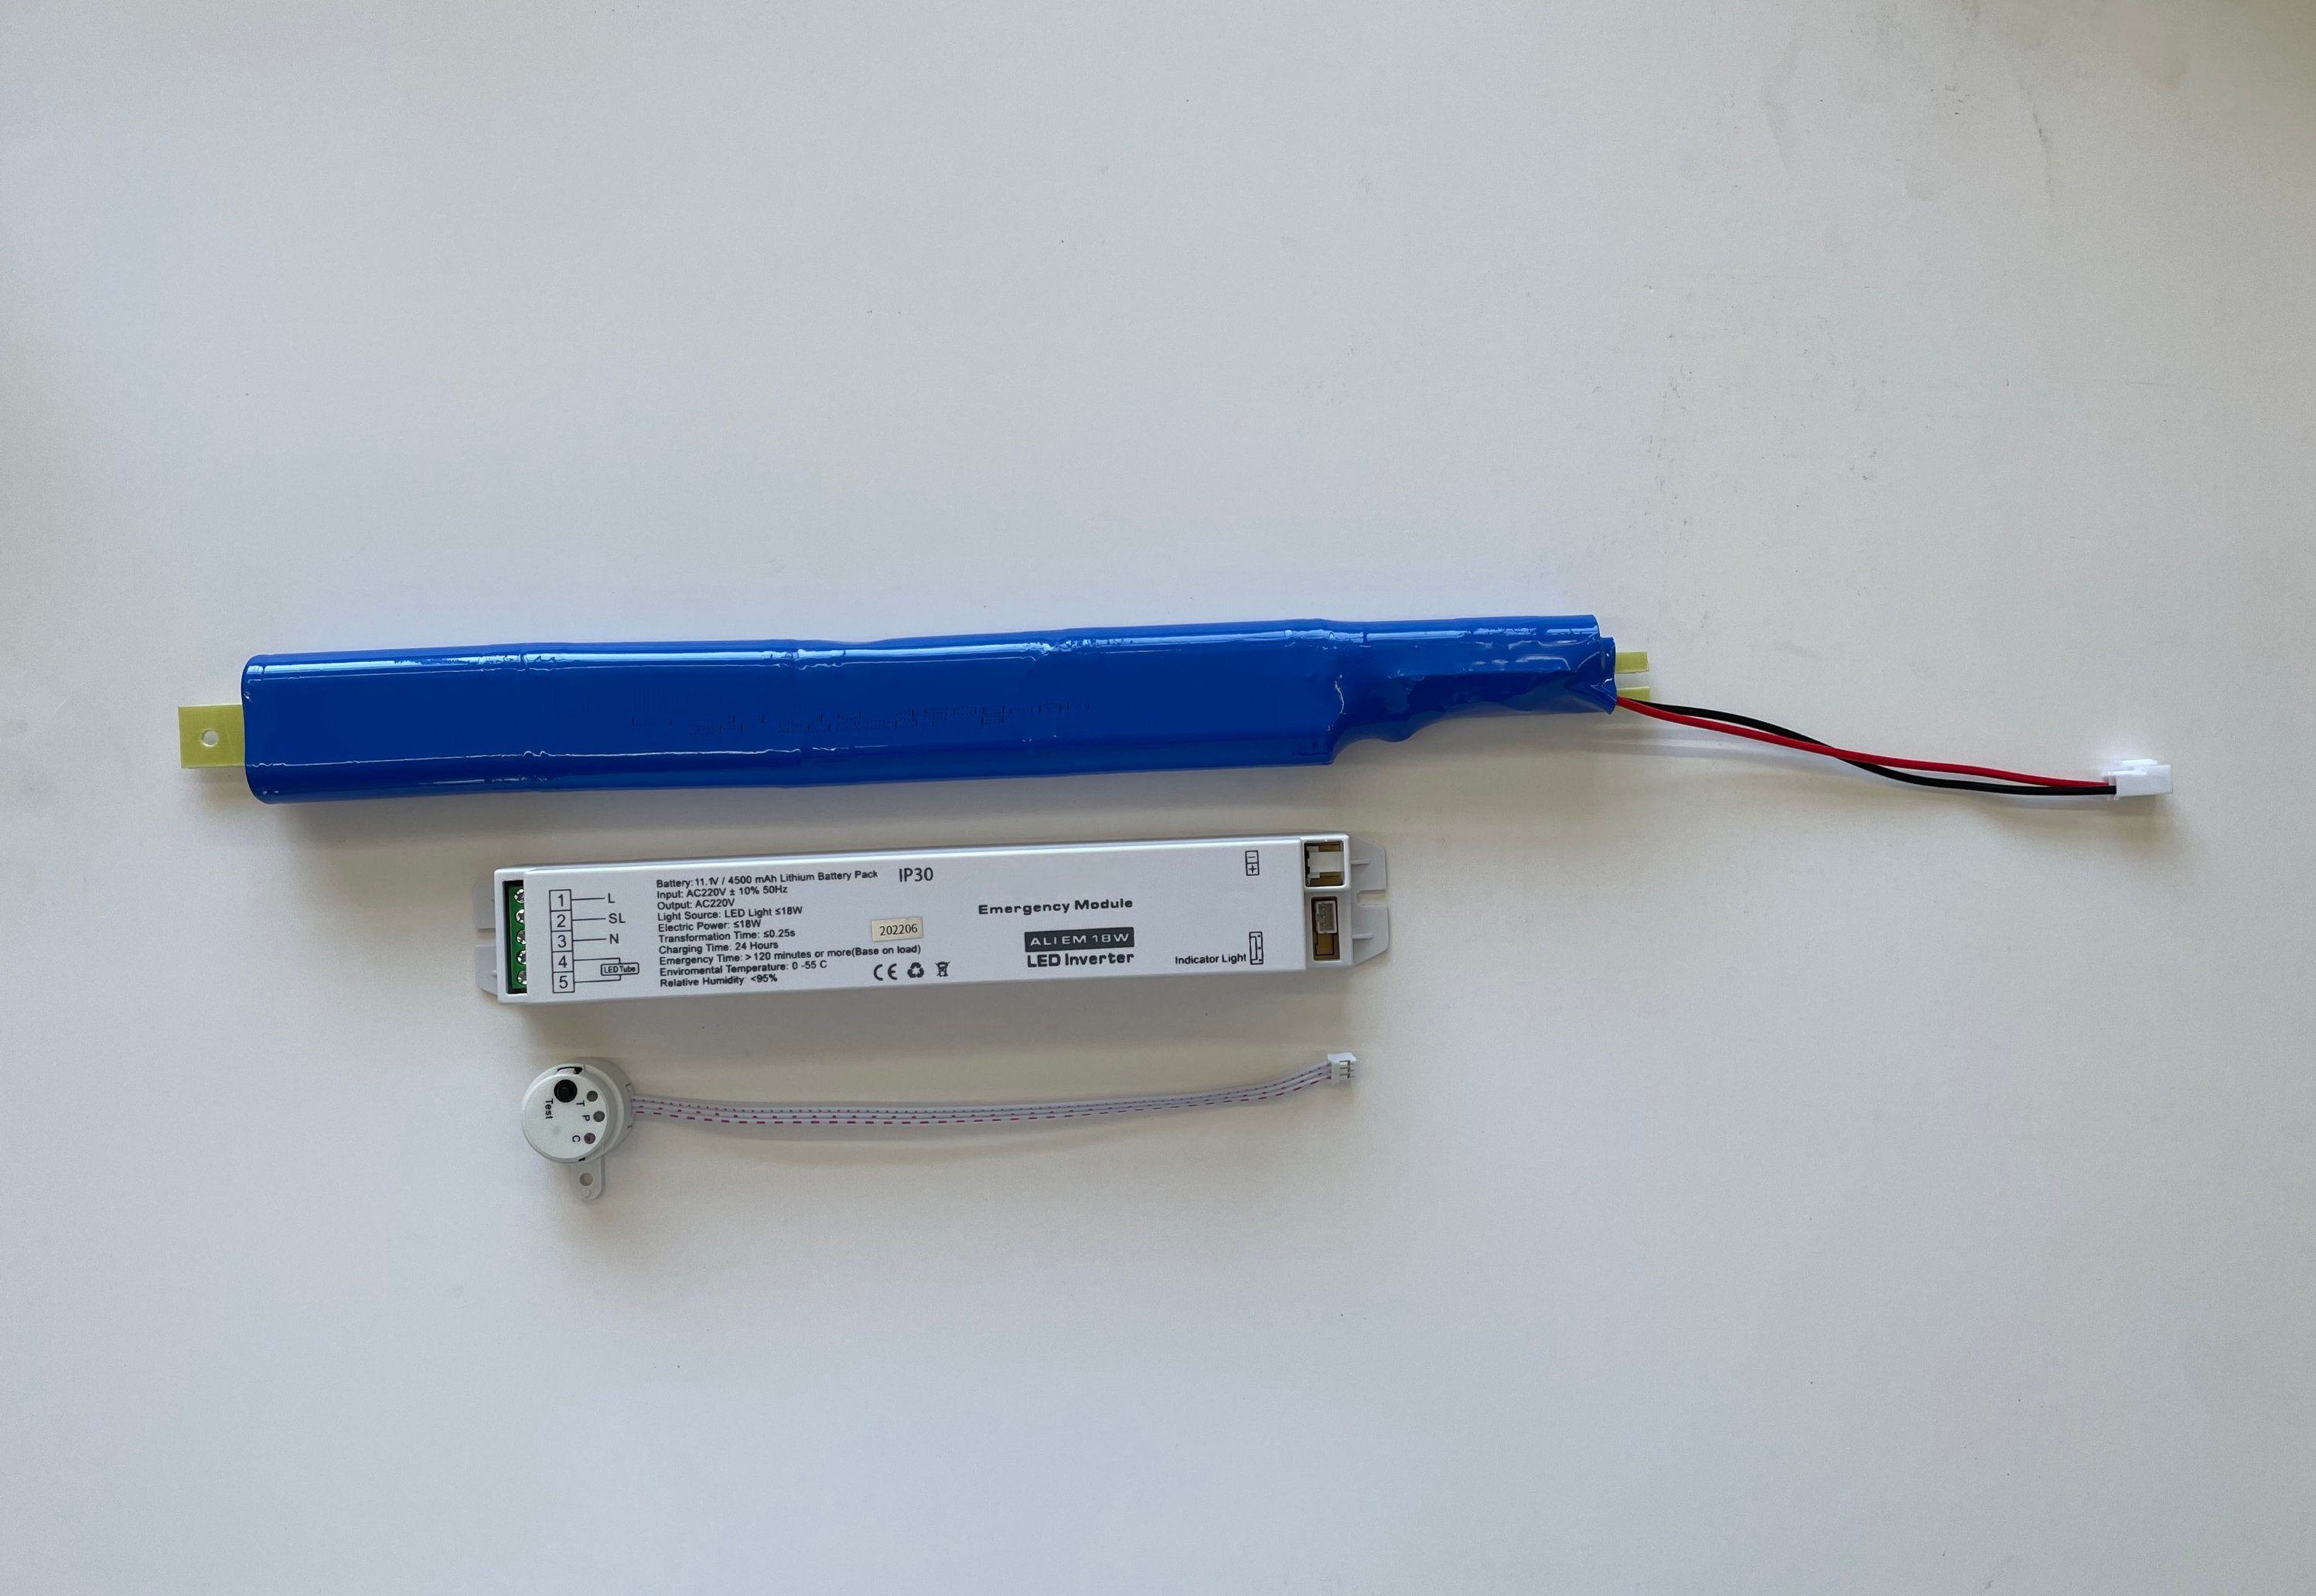 Kit de batería de conductor de emergencia con batería recargable LED para todas las luces LED de menos de 20W